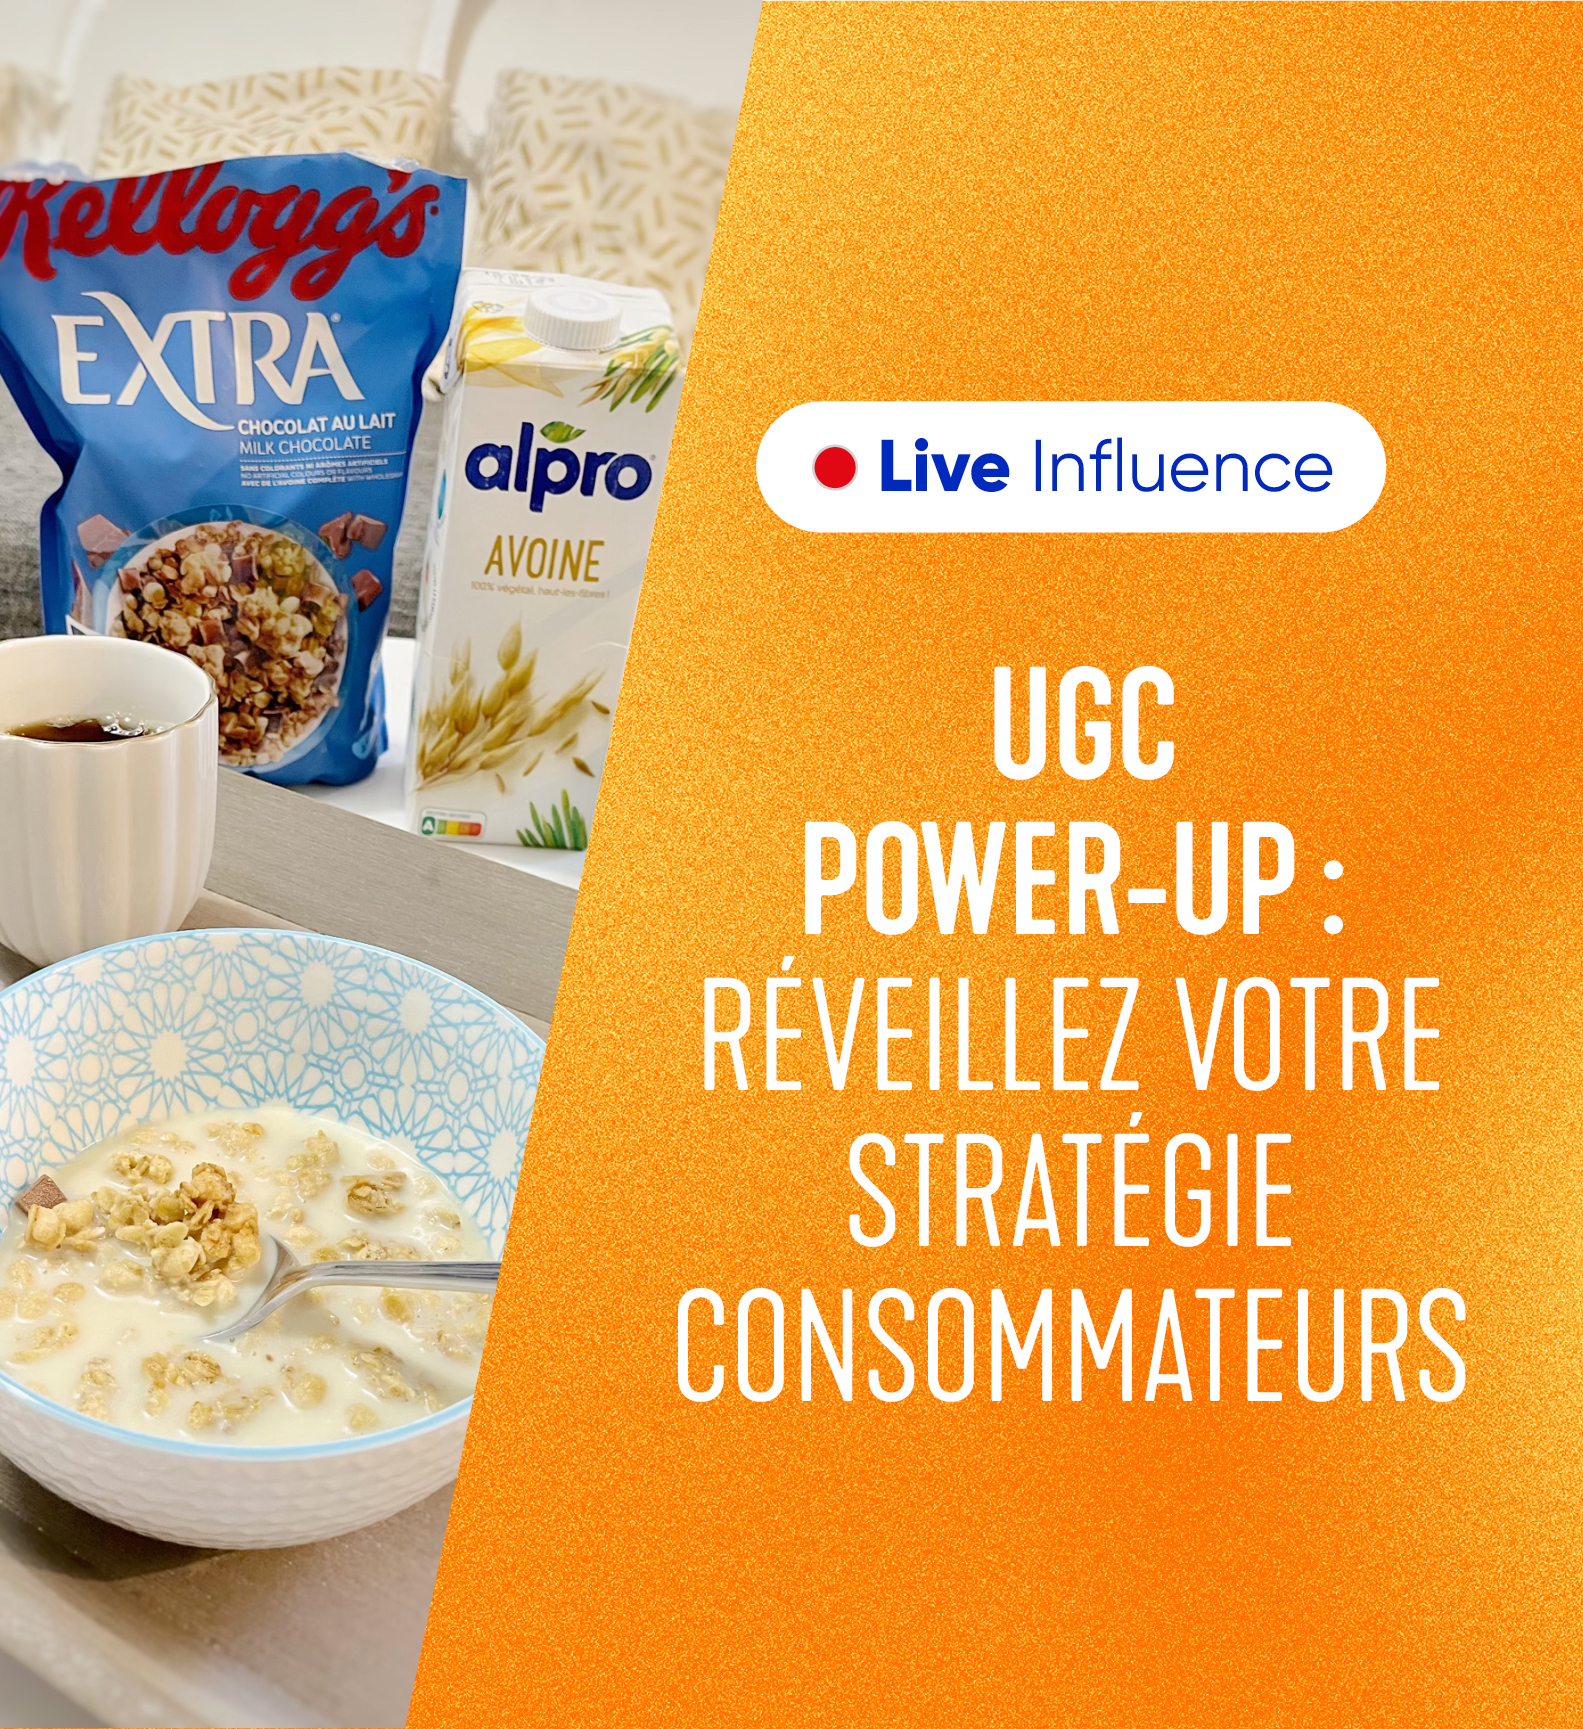 Live influence UGC Power-Up : réveillez votre stratégie consommateurs